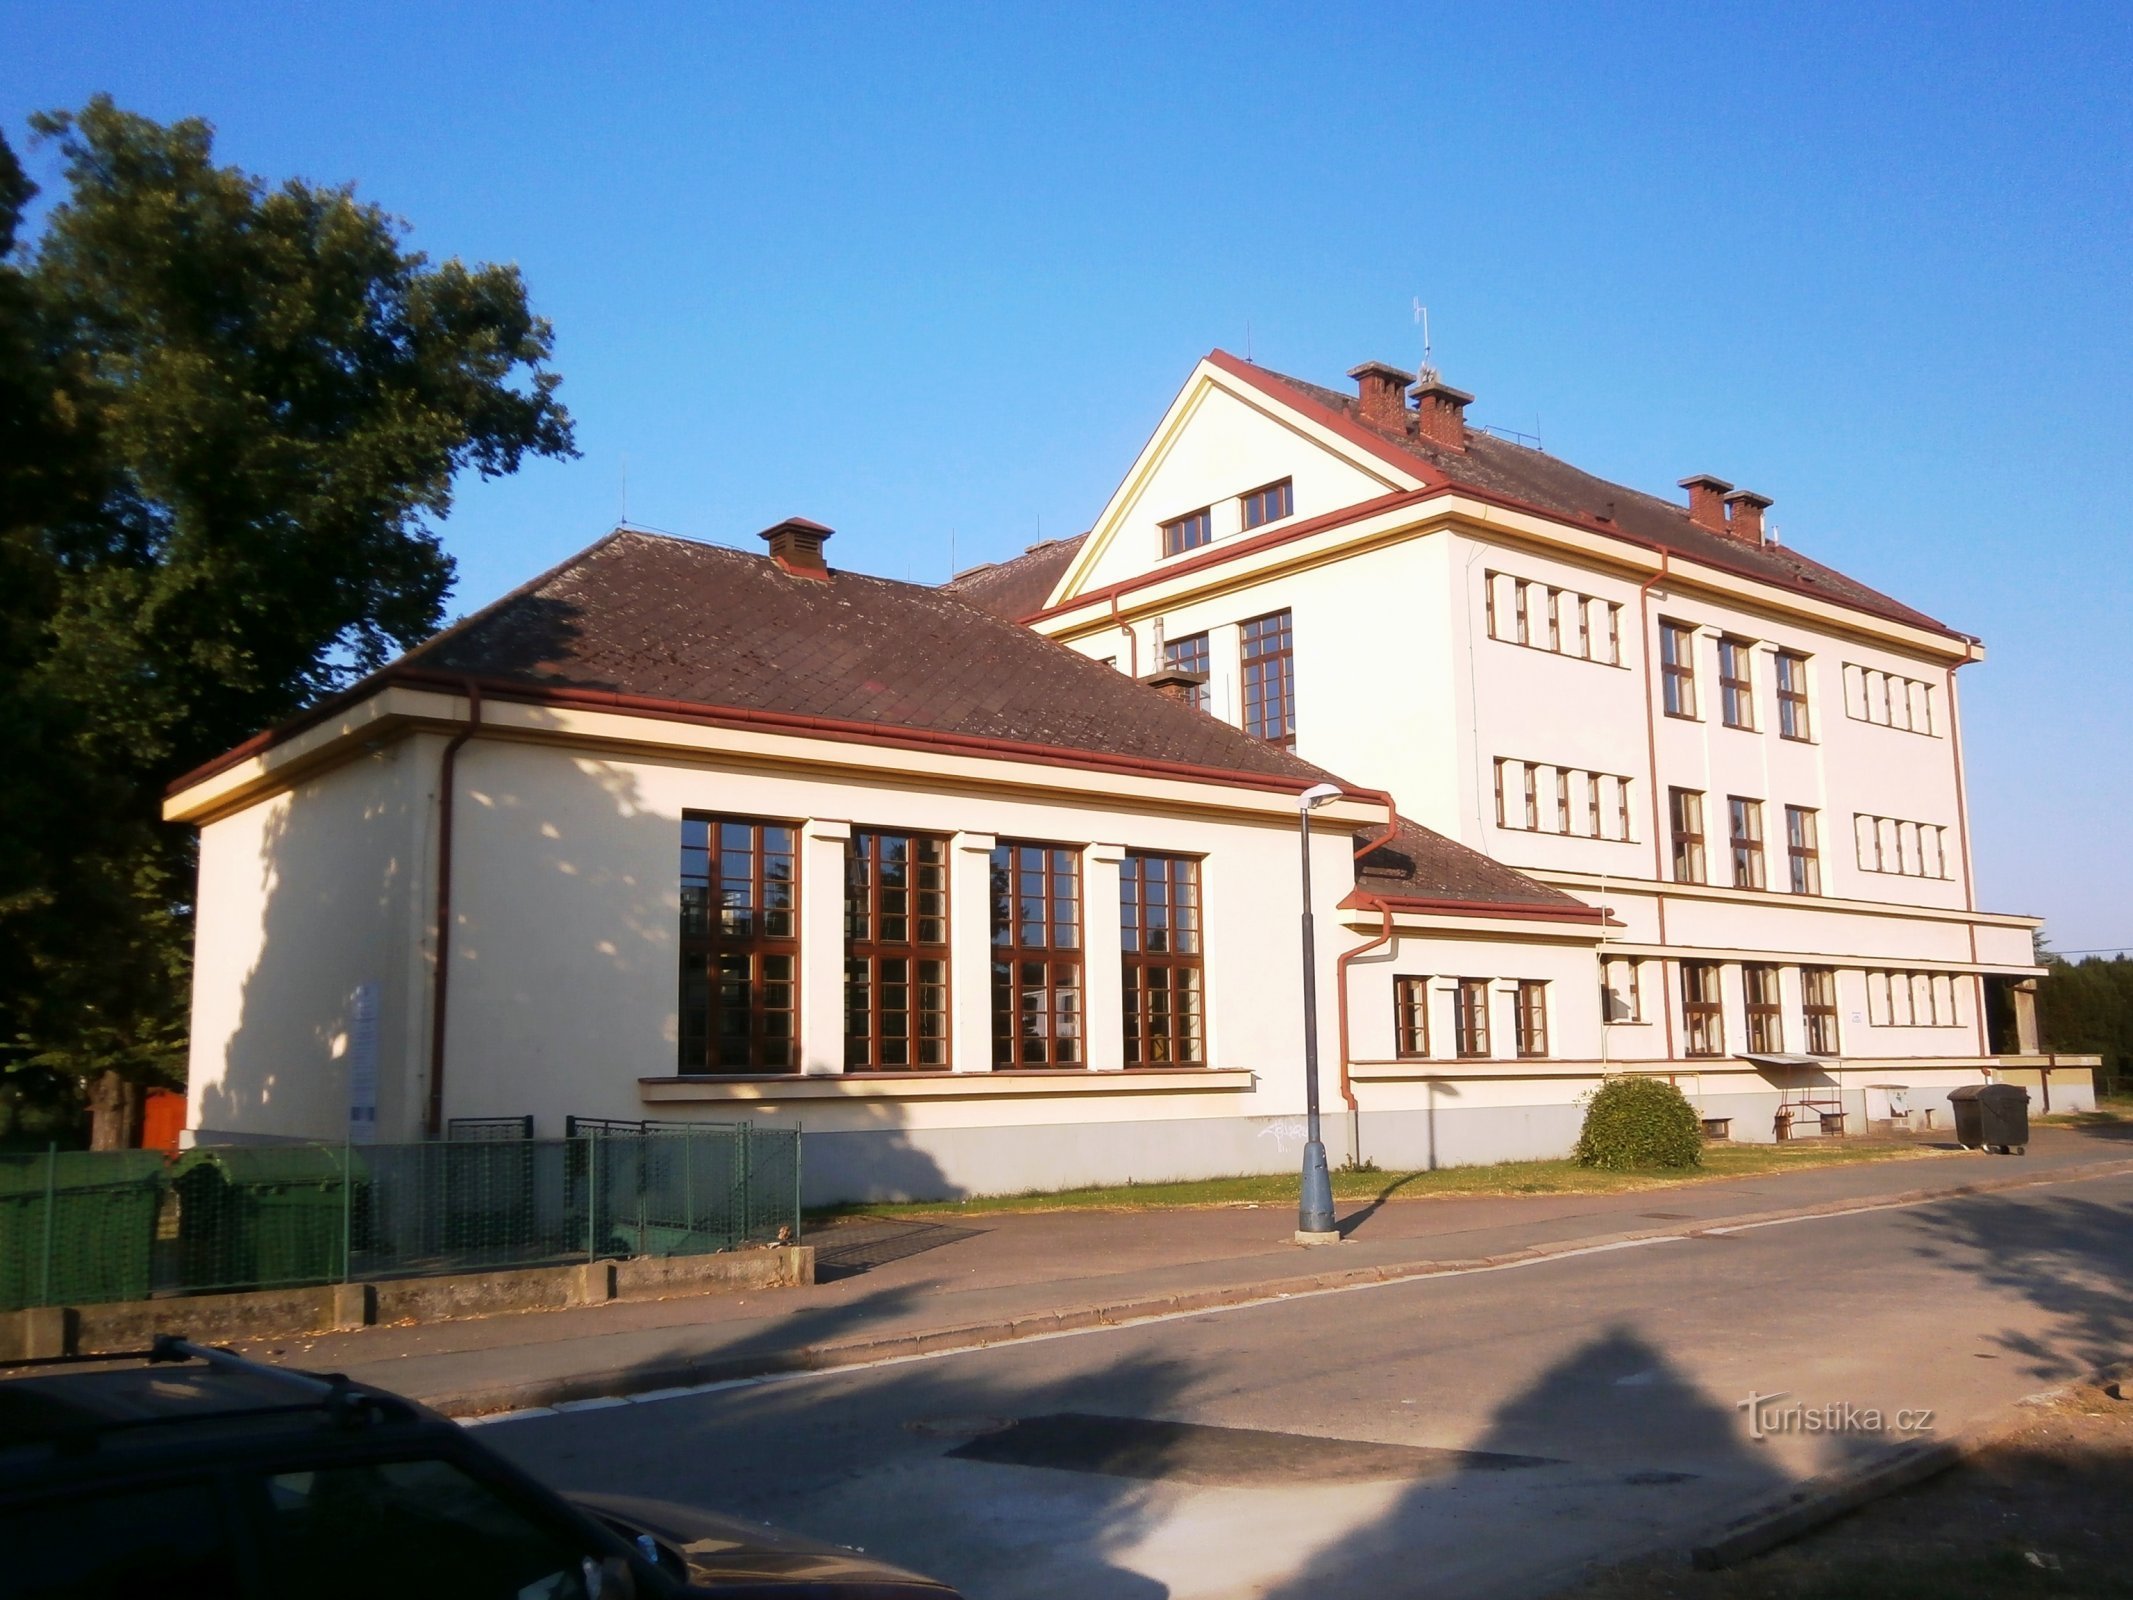 Osnovna škola Masaryk u Plotiště nad Labem (Hradec Králové, 28.7.2013.)